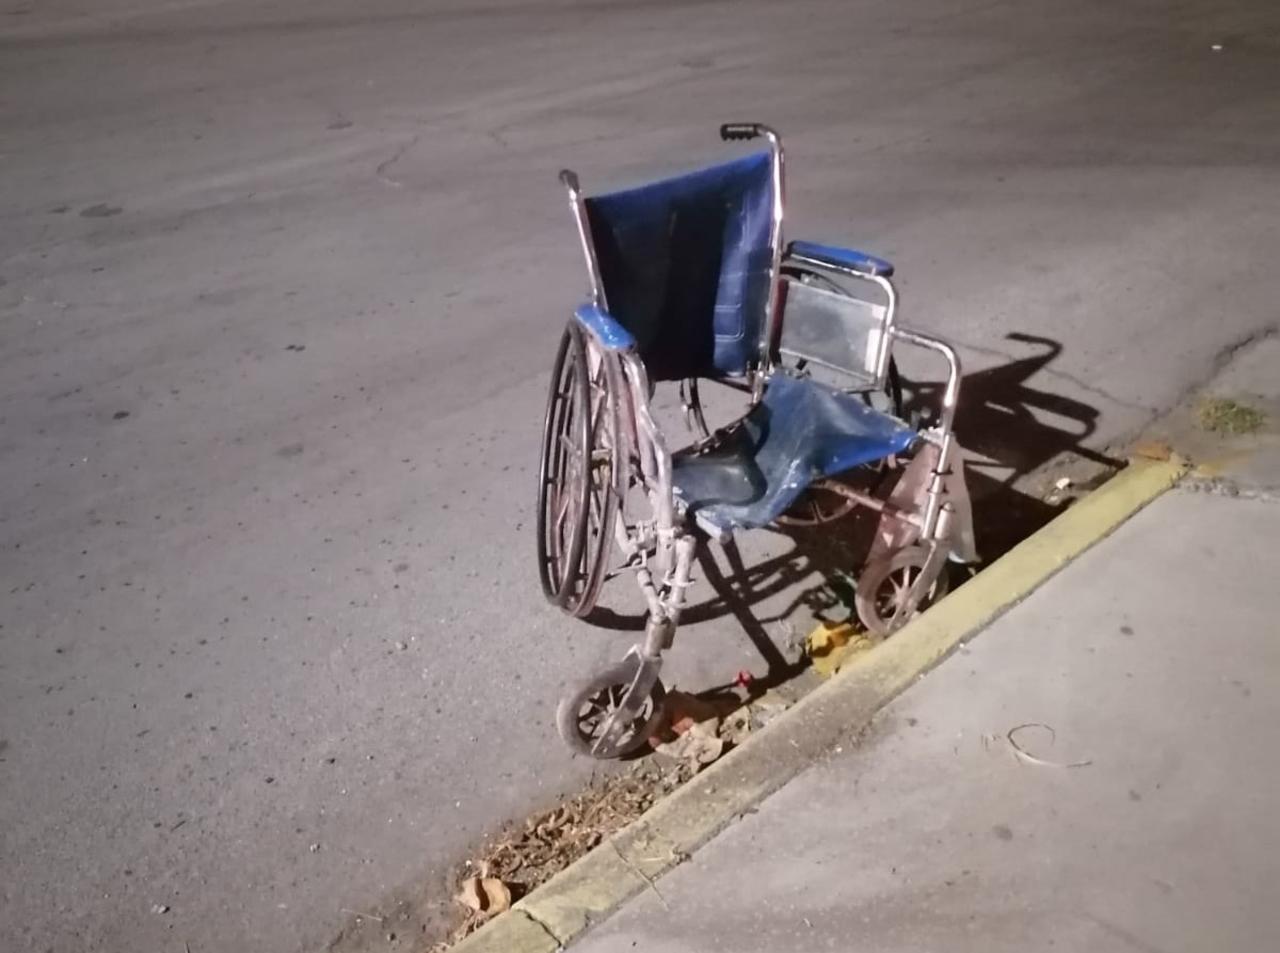 Indigente en silla de ruedas muere arrollado en Torreón